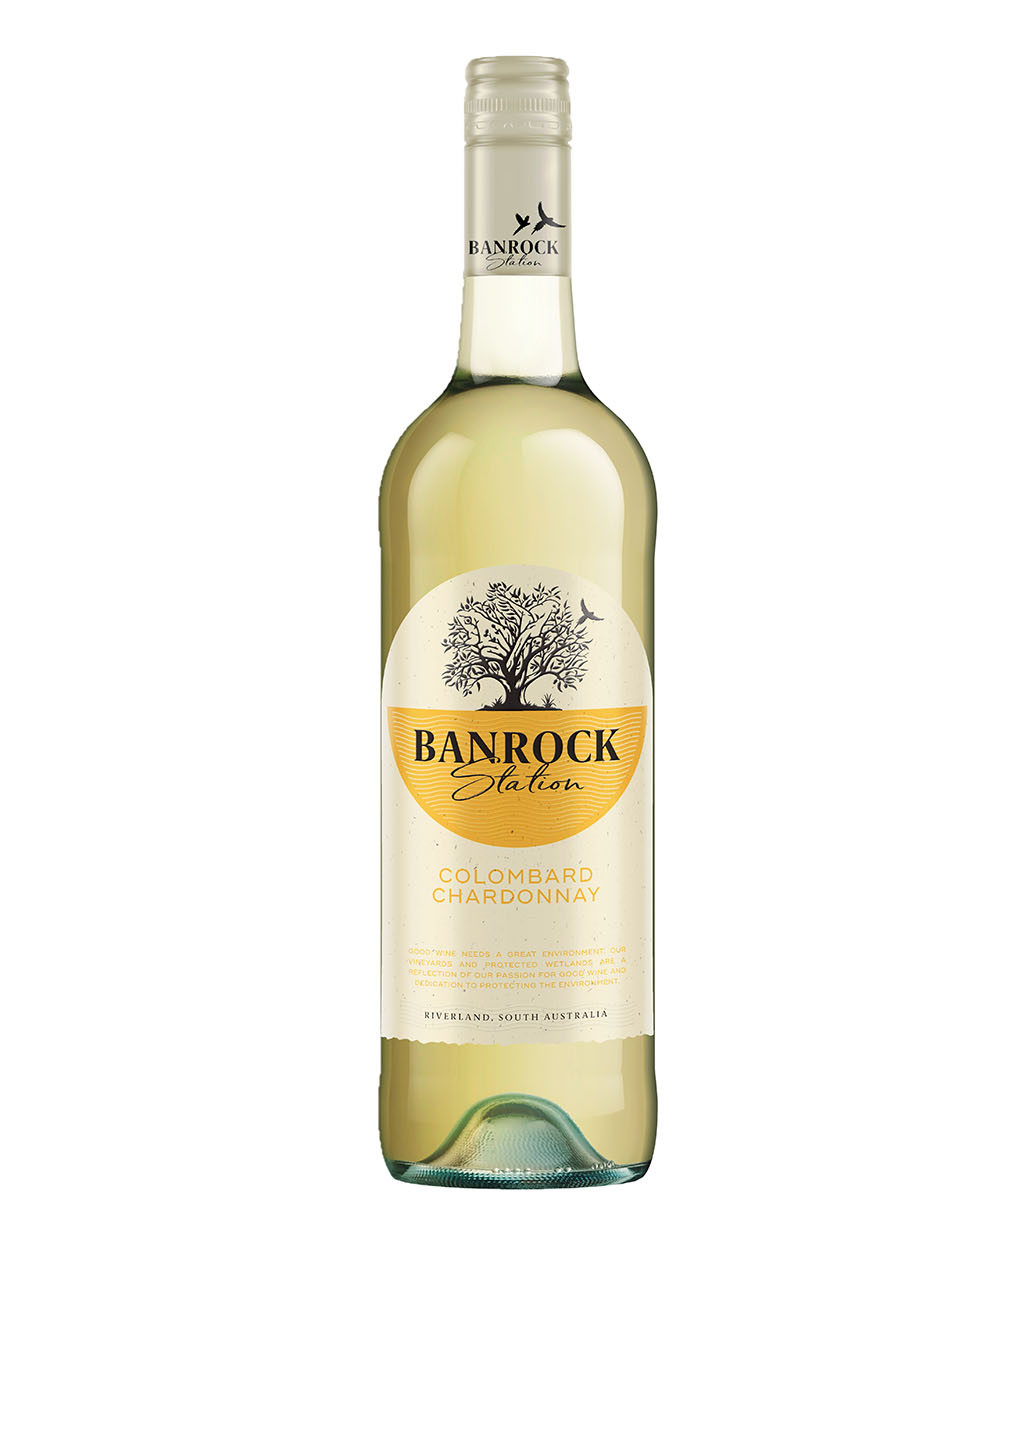 Вино Сolombard Chardonnay сухое, белое, 0,75 л Banrock Station белое